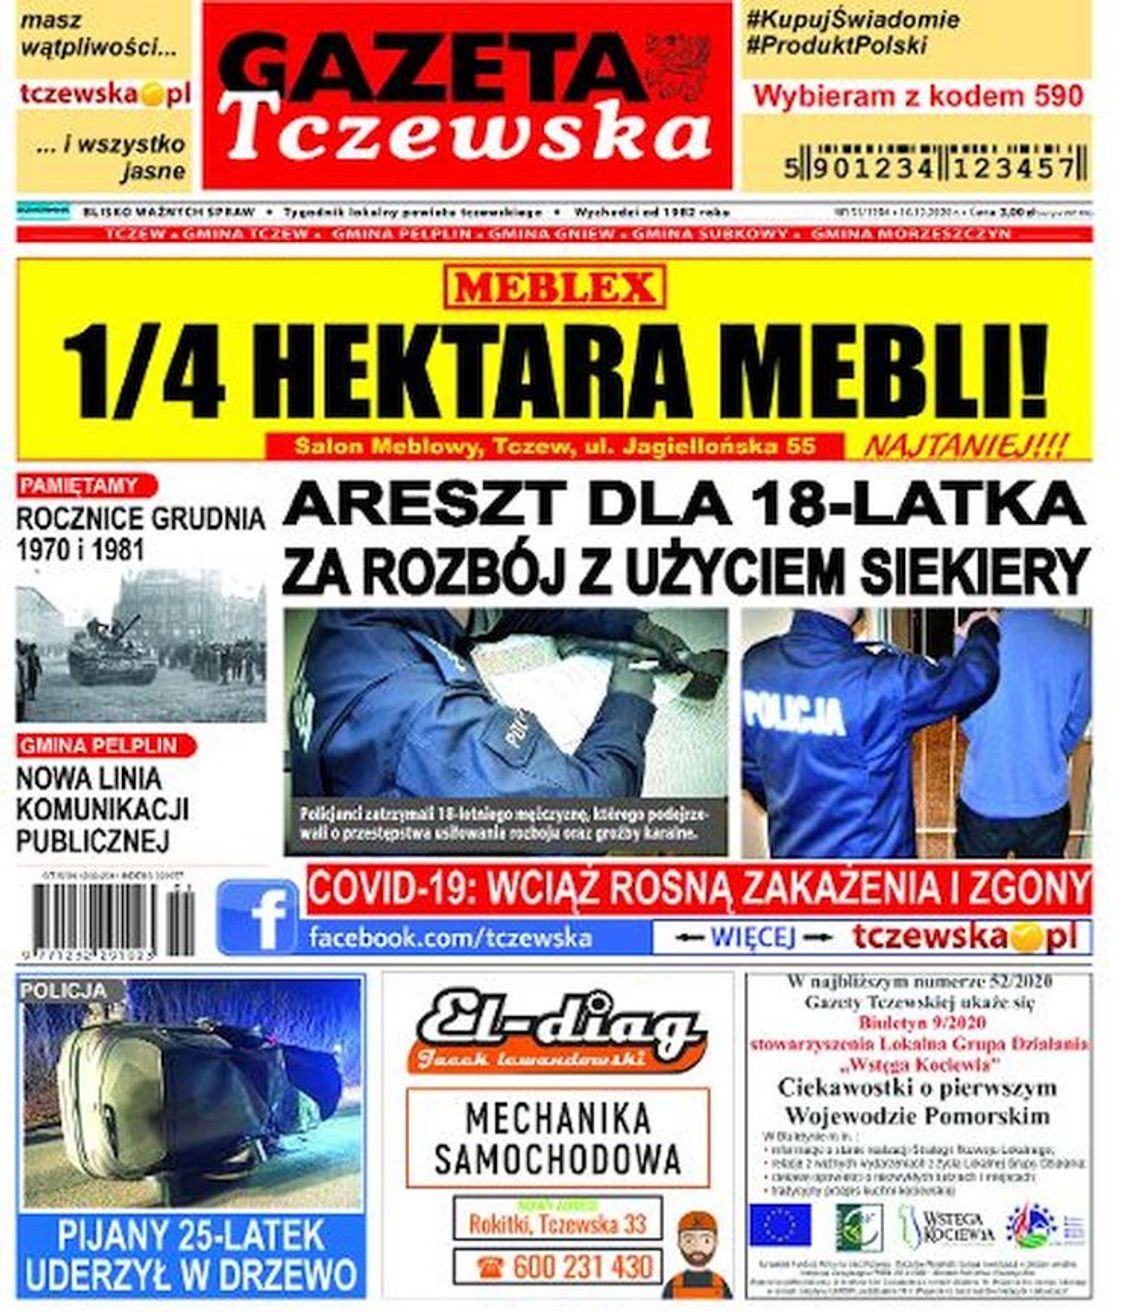 Nowy numer Gazety Tczewskiej już w sprzedaży! Świeże informacje z Tczewa i okolic naszego powiatu już w Twoim kiosku. Co w środku?